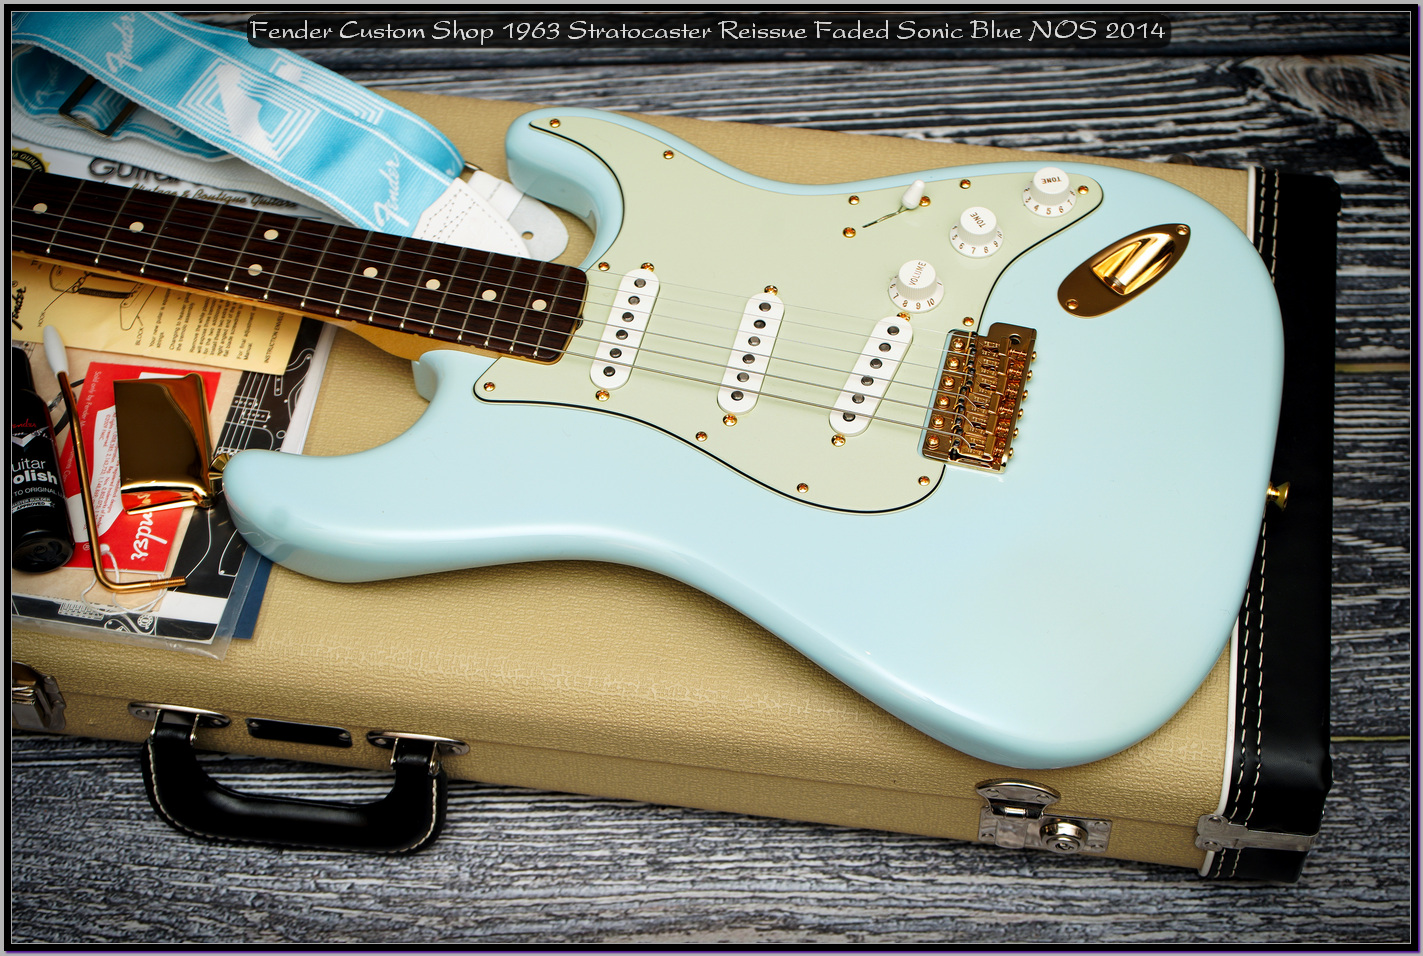 Fender Custom Shop 1963 Stratocaster Reissue Faded Sonic Blue NOS 2014 02_x1400.jpg